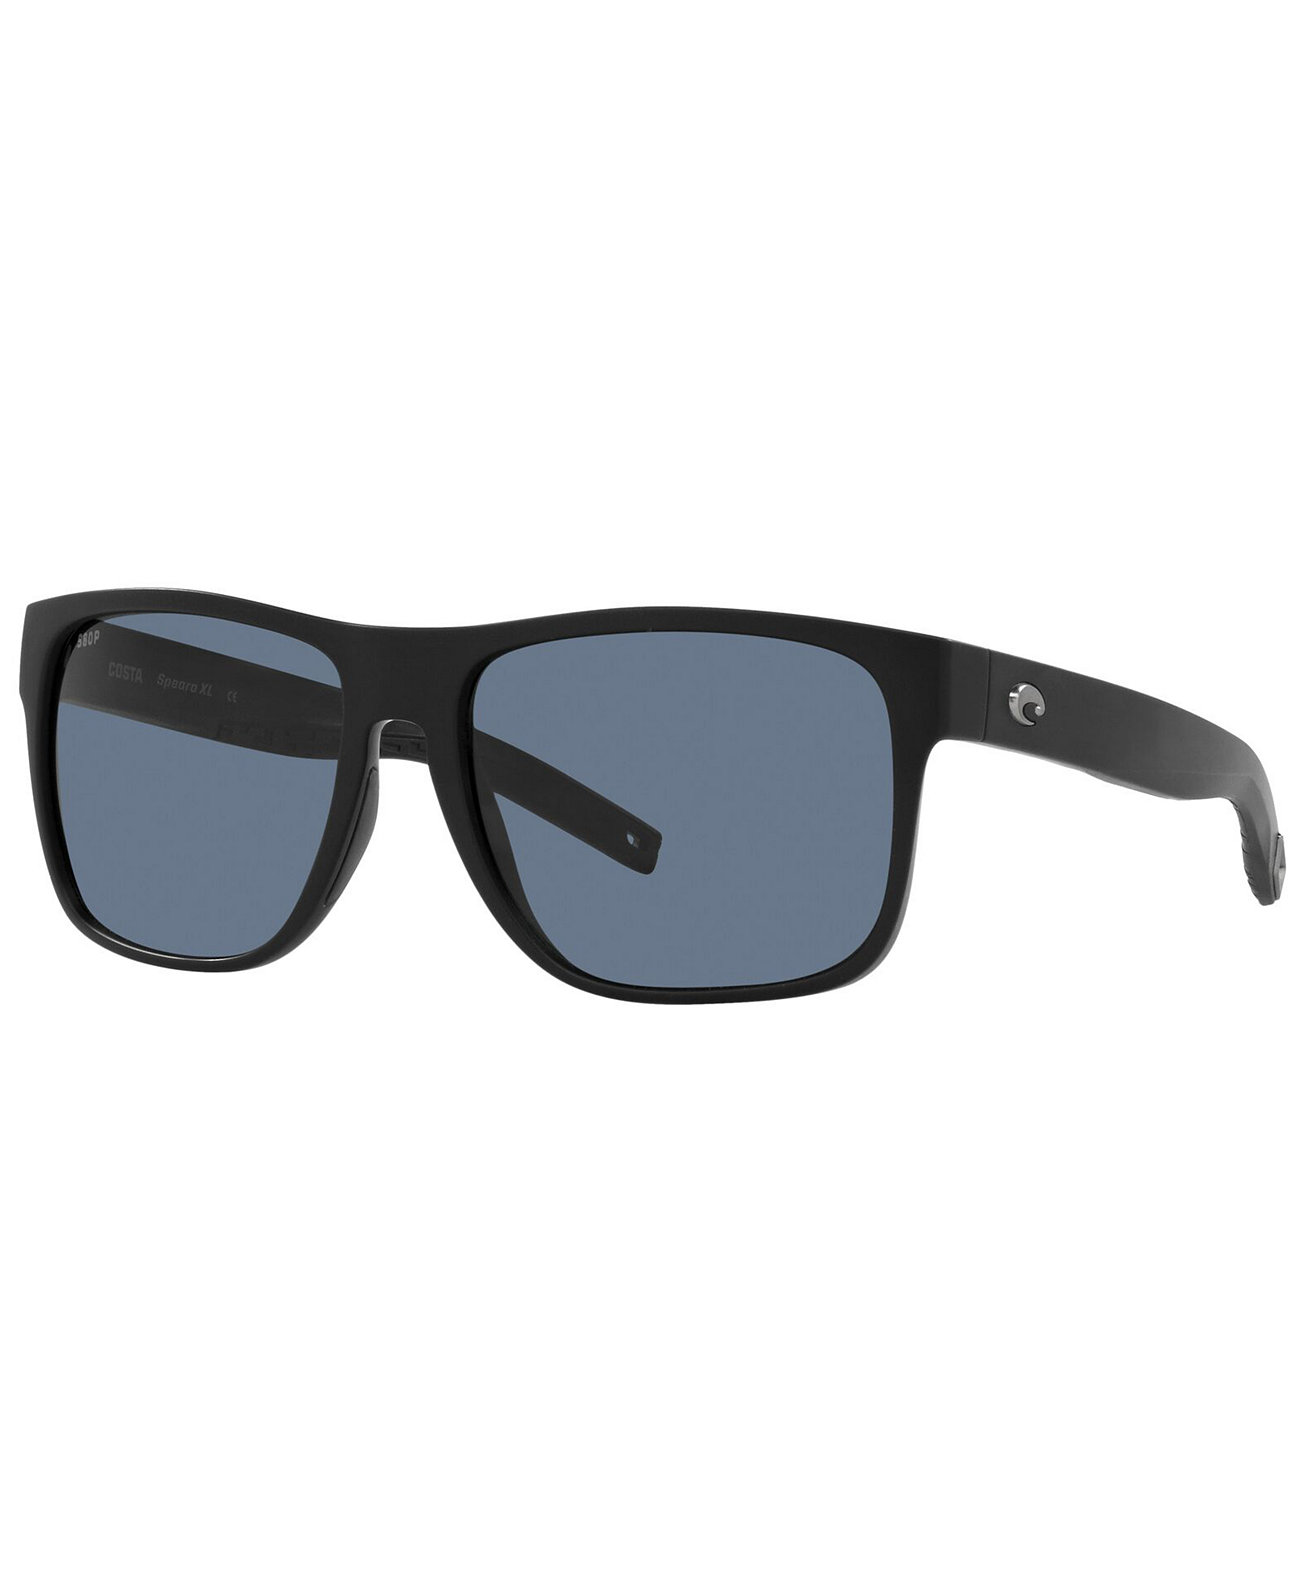 Men's Spearo XL Polarized Sunglasses, Polar 6S9013 COSTA DEL MAR